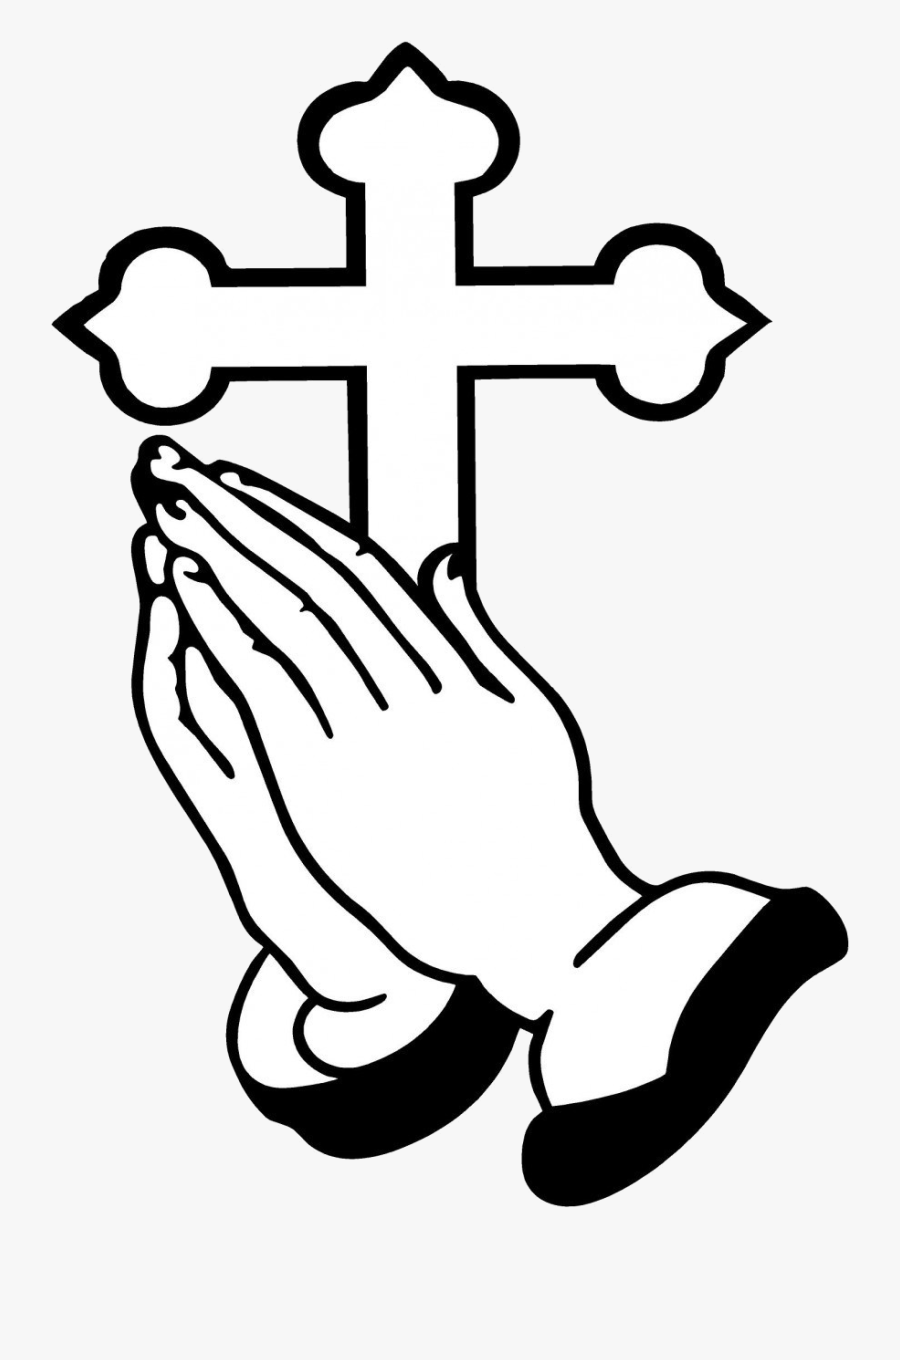 Praying Hands Christian Clip Art Ideas And Designs - Clip Art Prayer Hand, Transparent Clipart